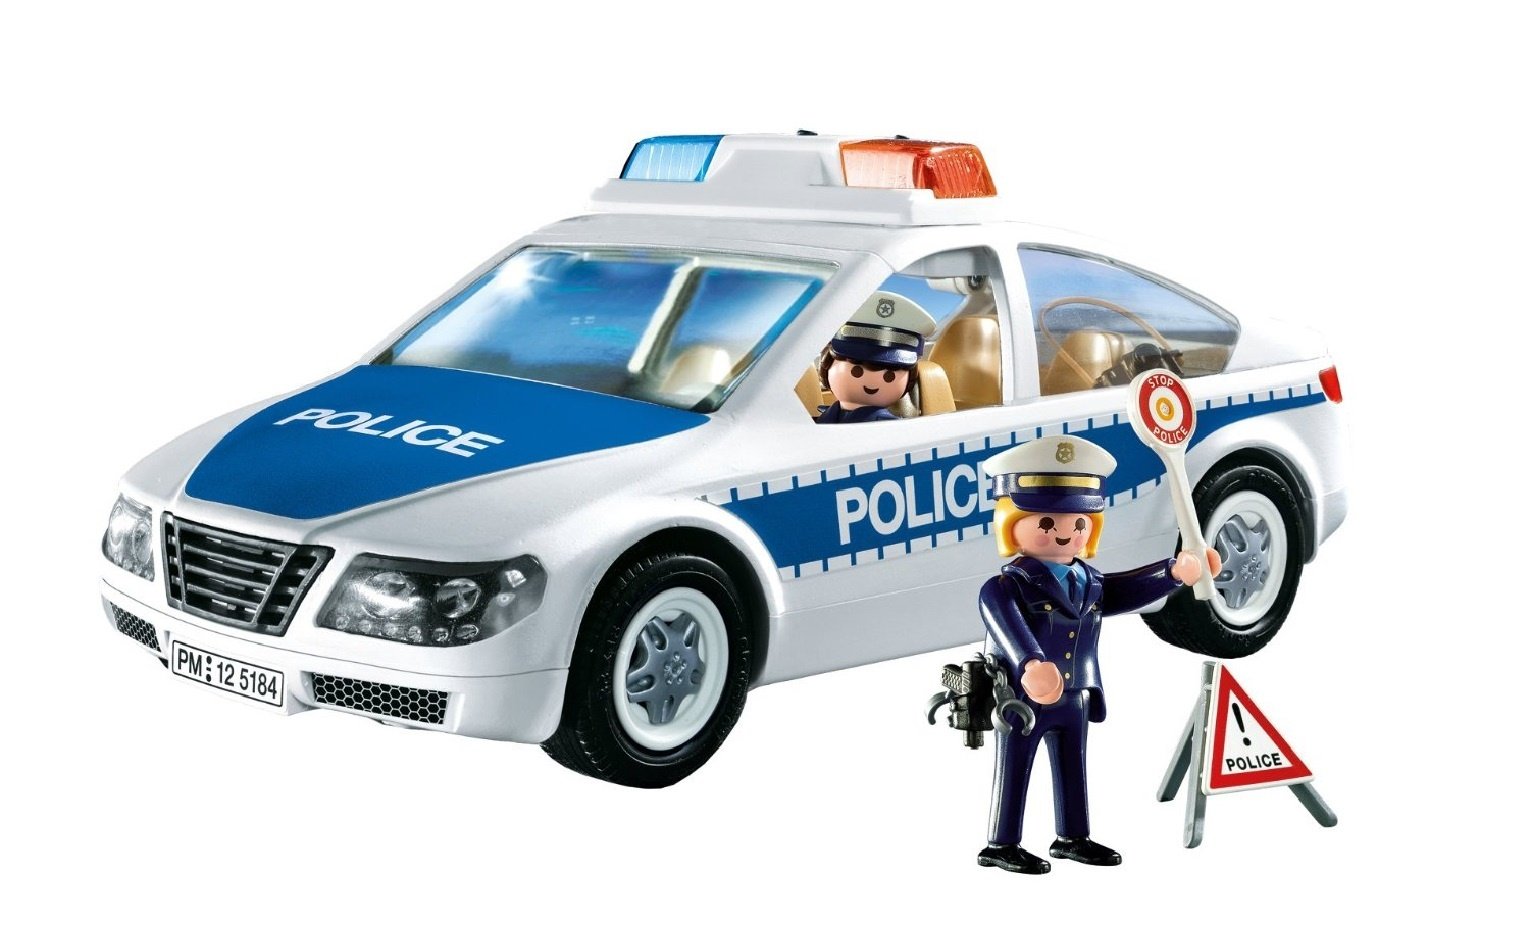 Машинка про полицию. Playmobil полиция 6920. Плеймобил полиция 5184. Плеймобиль полиция полиц маш. Playmobil Police 5184.